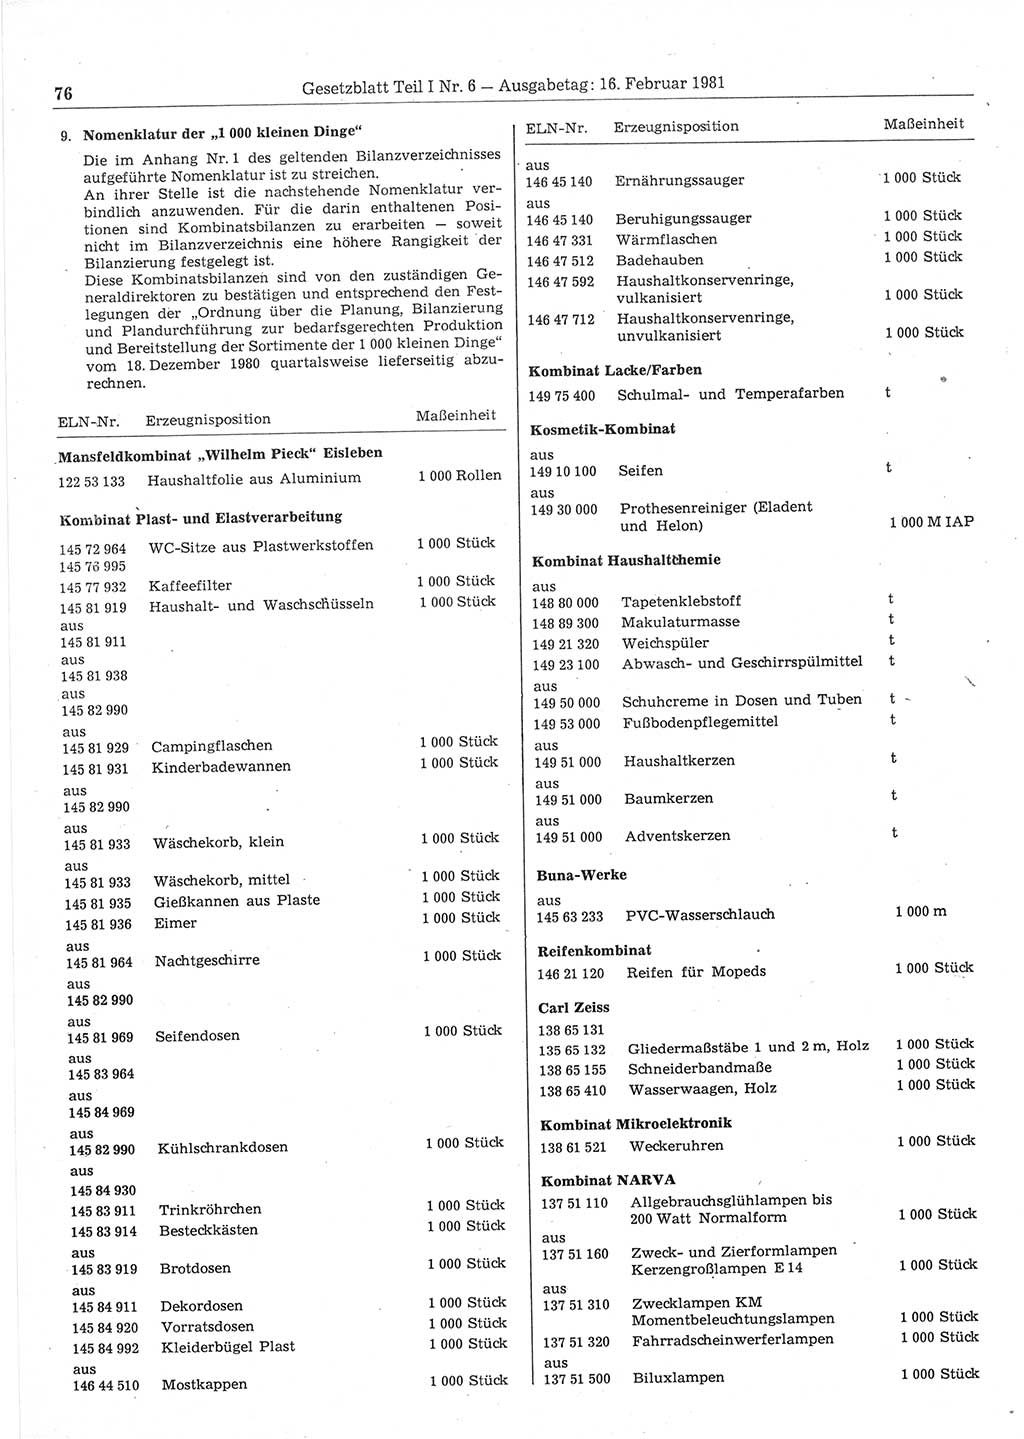 Gesetzblatt (GBl.) der Deutschen Demokratischen Republik (DDR) Teil Ⅰ 1981, Seite 76 (GBl. DDR Ⅰ 1981, S. 76)